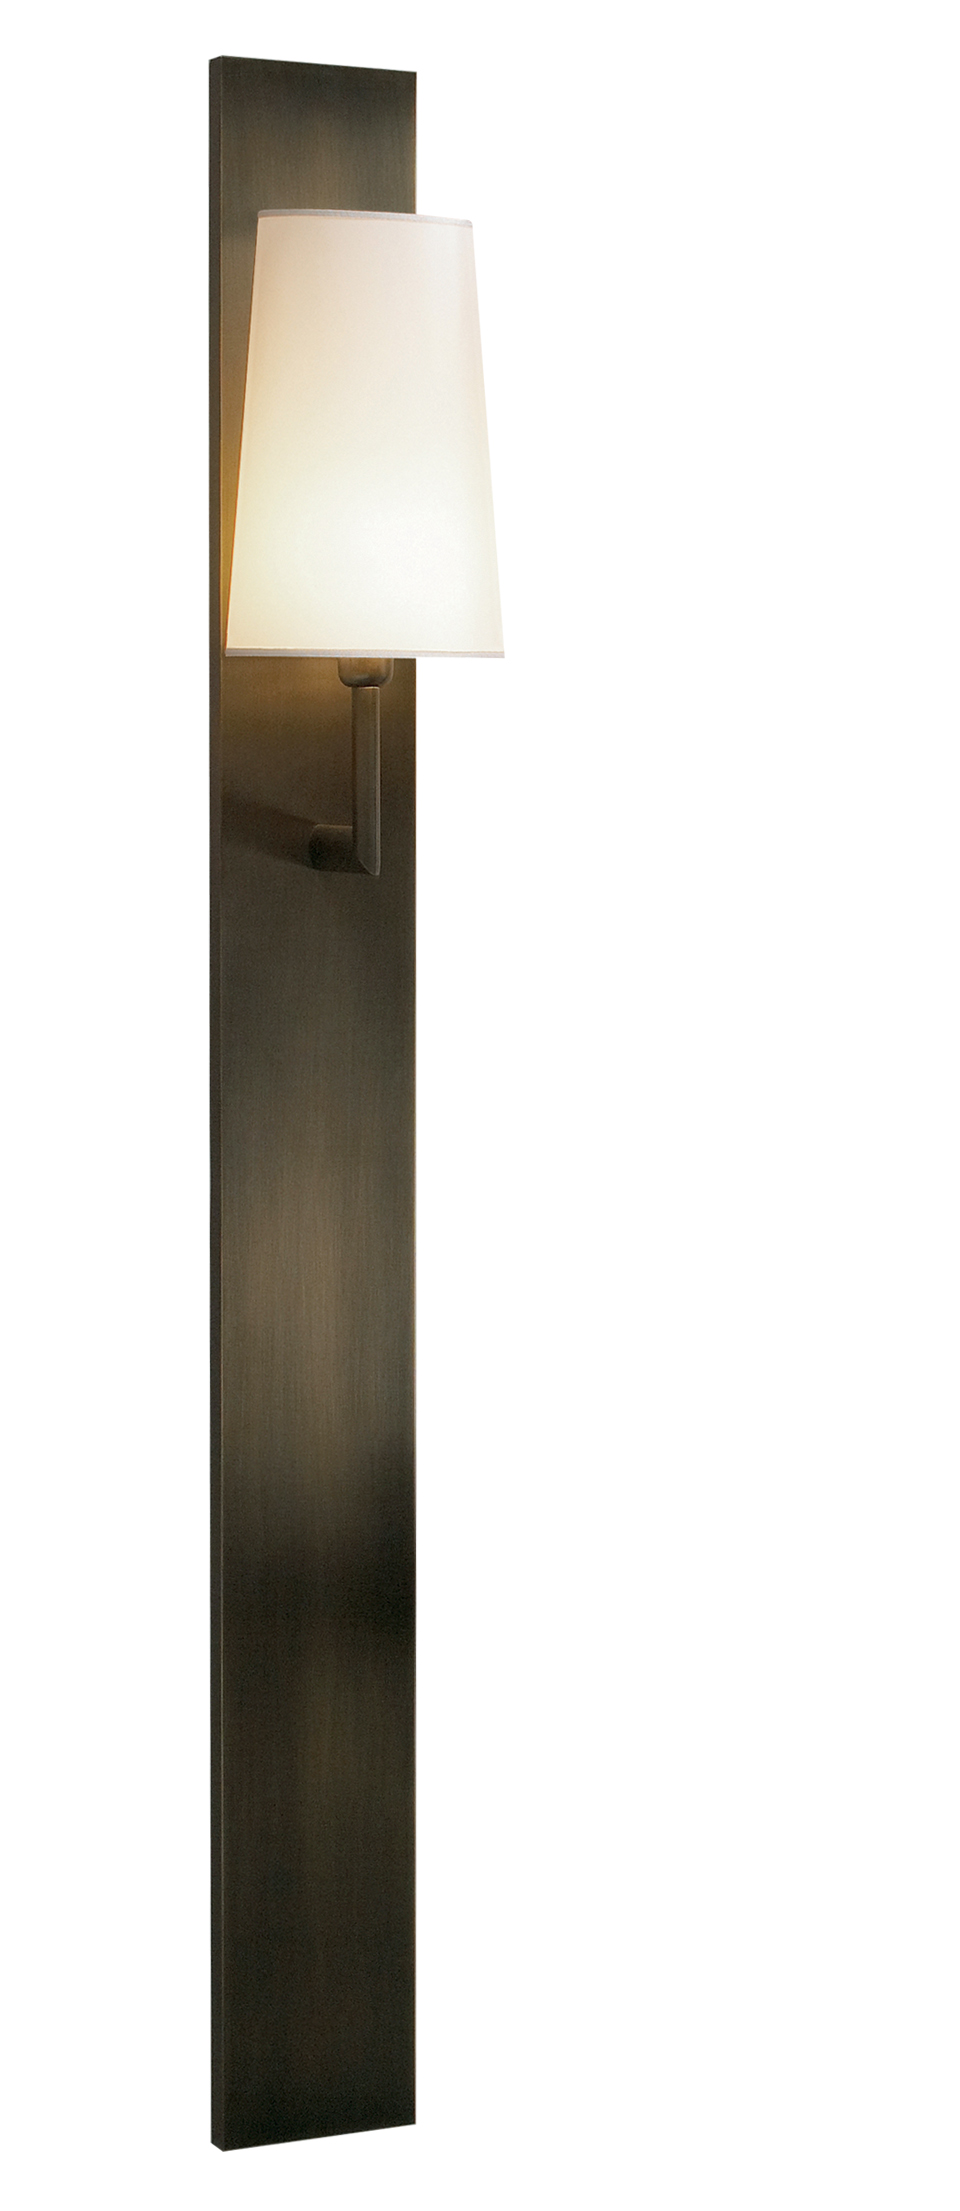 Rosa è una lampada da parete a LED in bronzo con paralume in lino, cotone o seta con bordo fatto a mano, del catalogo di Promemoria | Promemoria